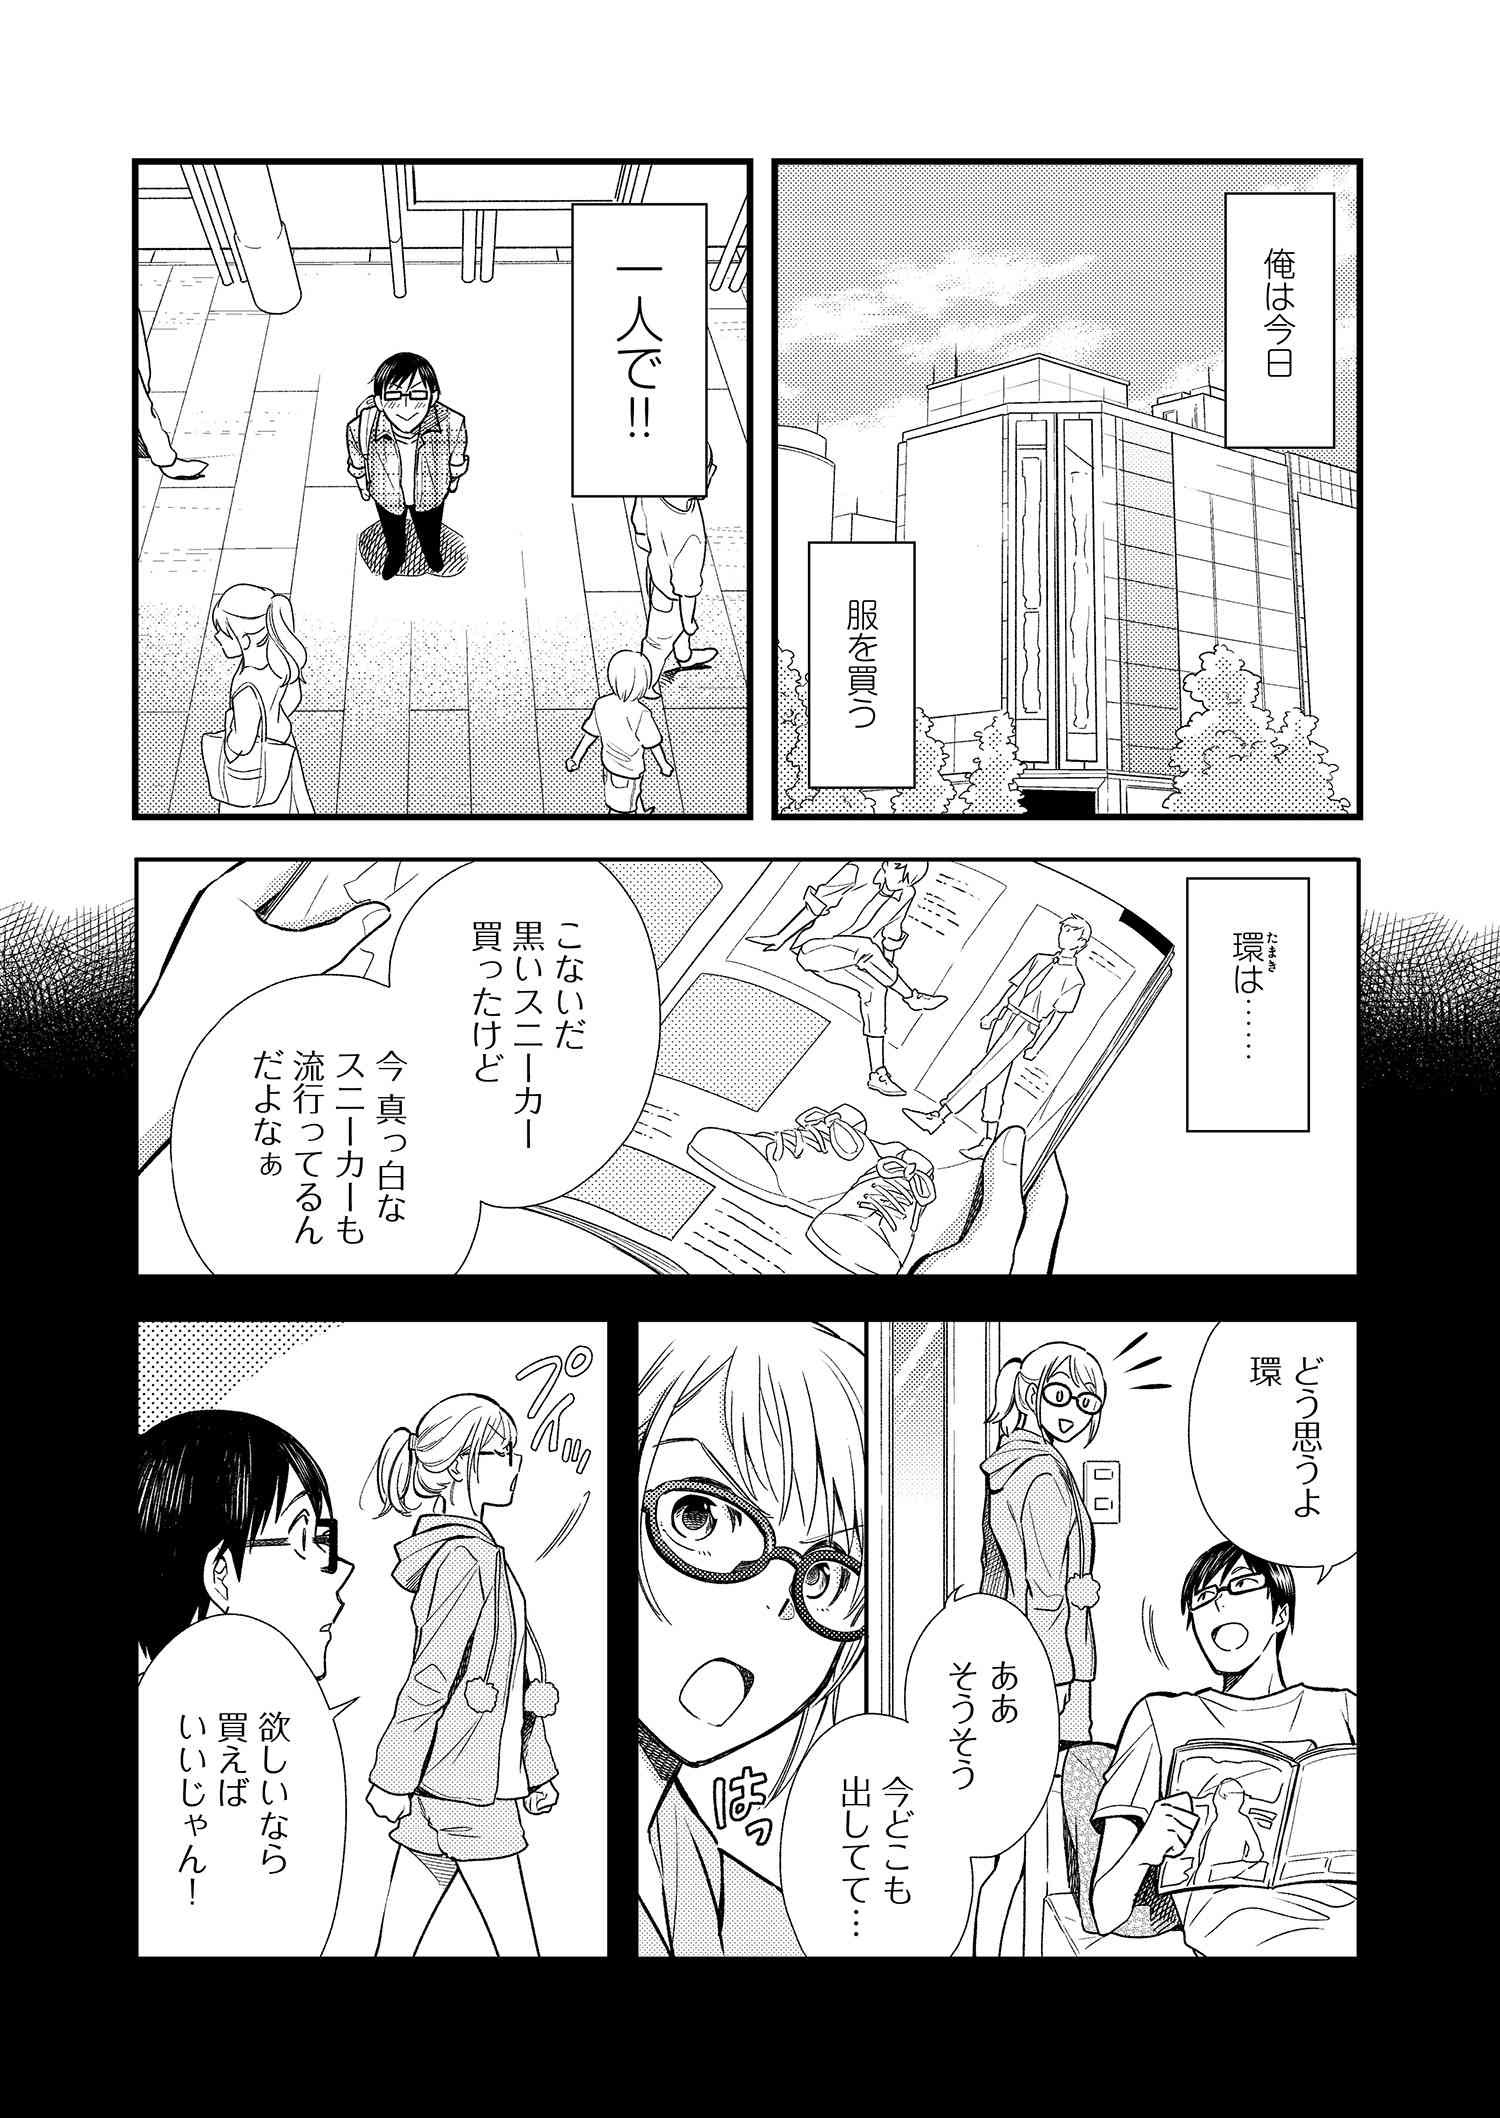 Fuku o Kiru Nara Konna Fuu ni - 服を着るならこんなふうに - Chapter 5 - Page 2